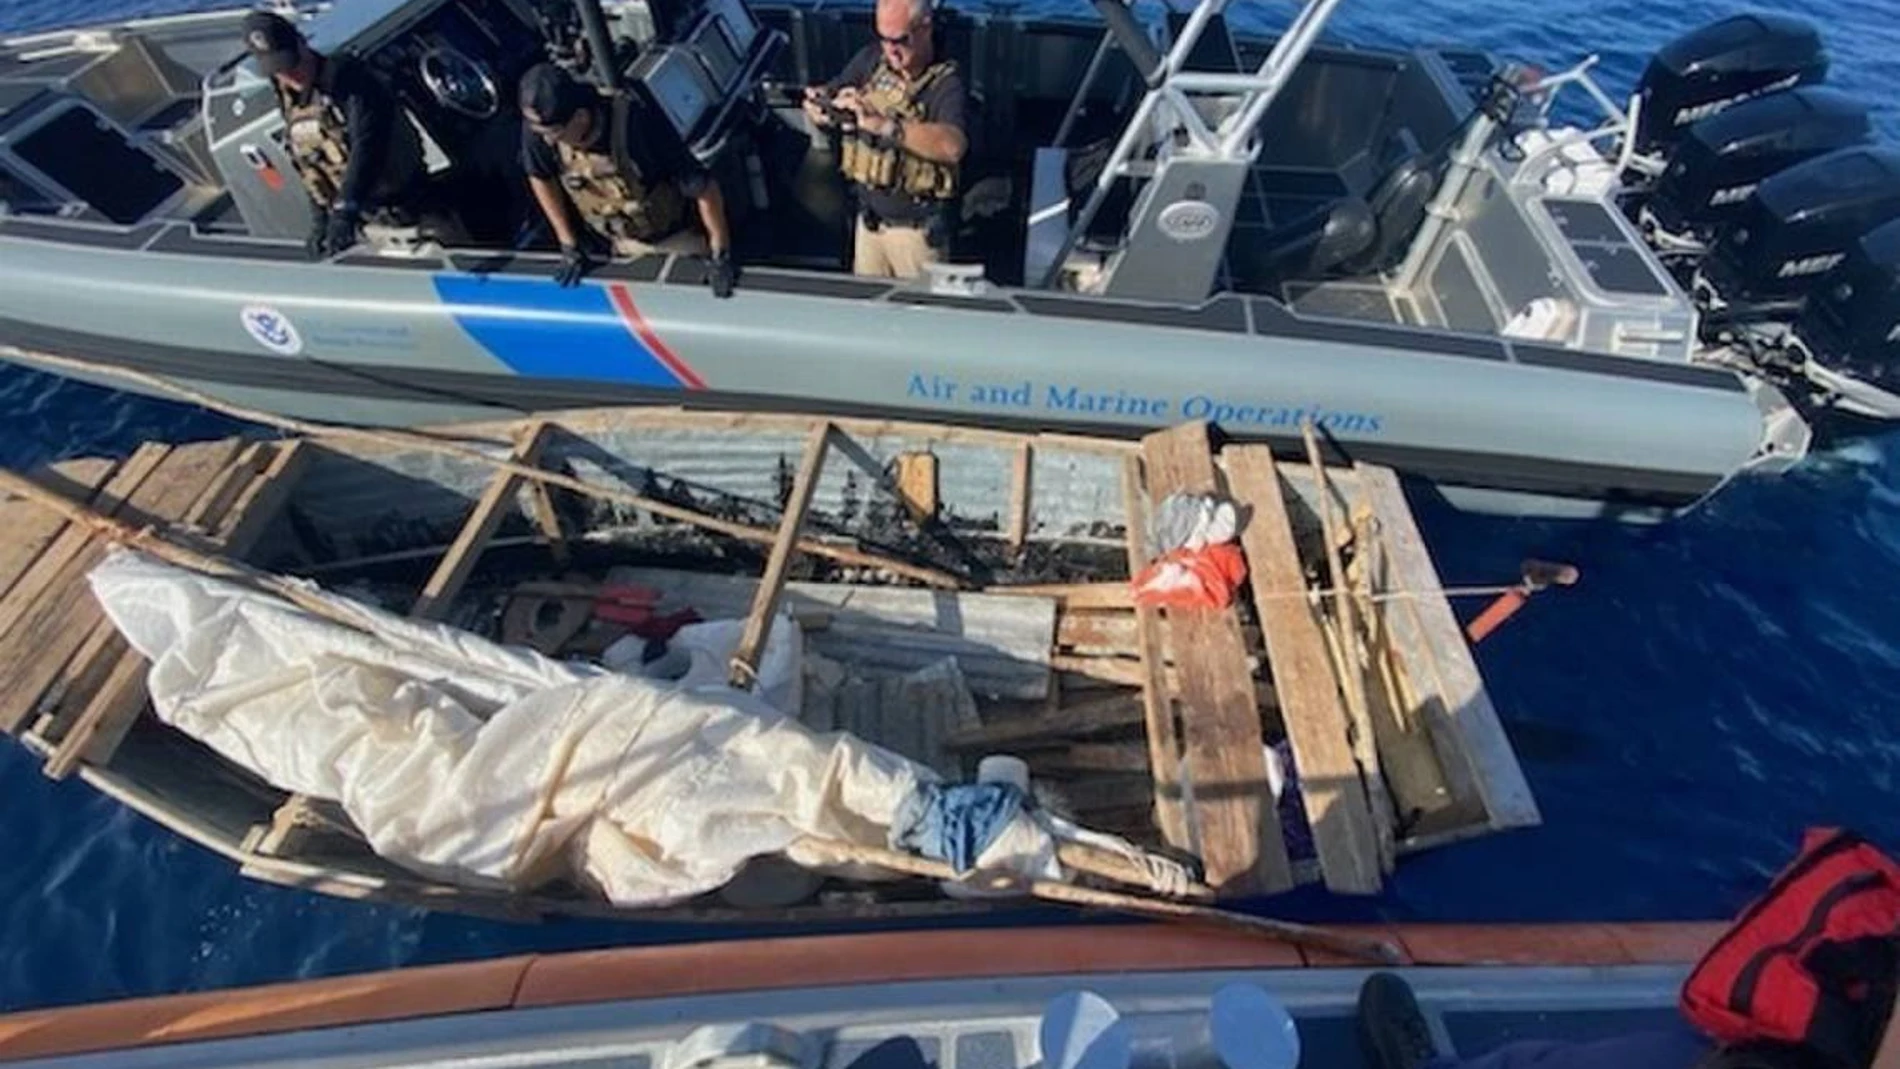 Los equipos de rescate de la Guardia Costera estadounidense interceptaron en mar abierto a ocho migrantes cubanos que viajaban en una pequeña y precaria embarcación cerca de los Cayos de Florida este mes